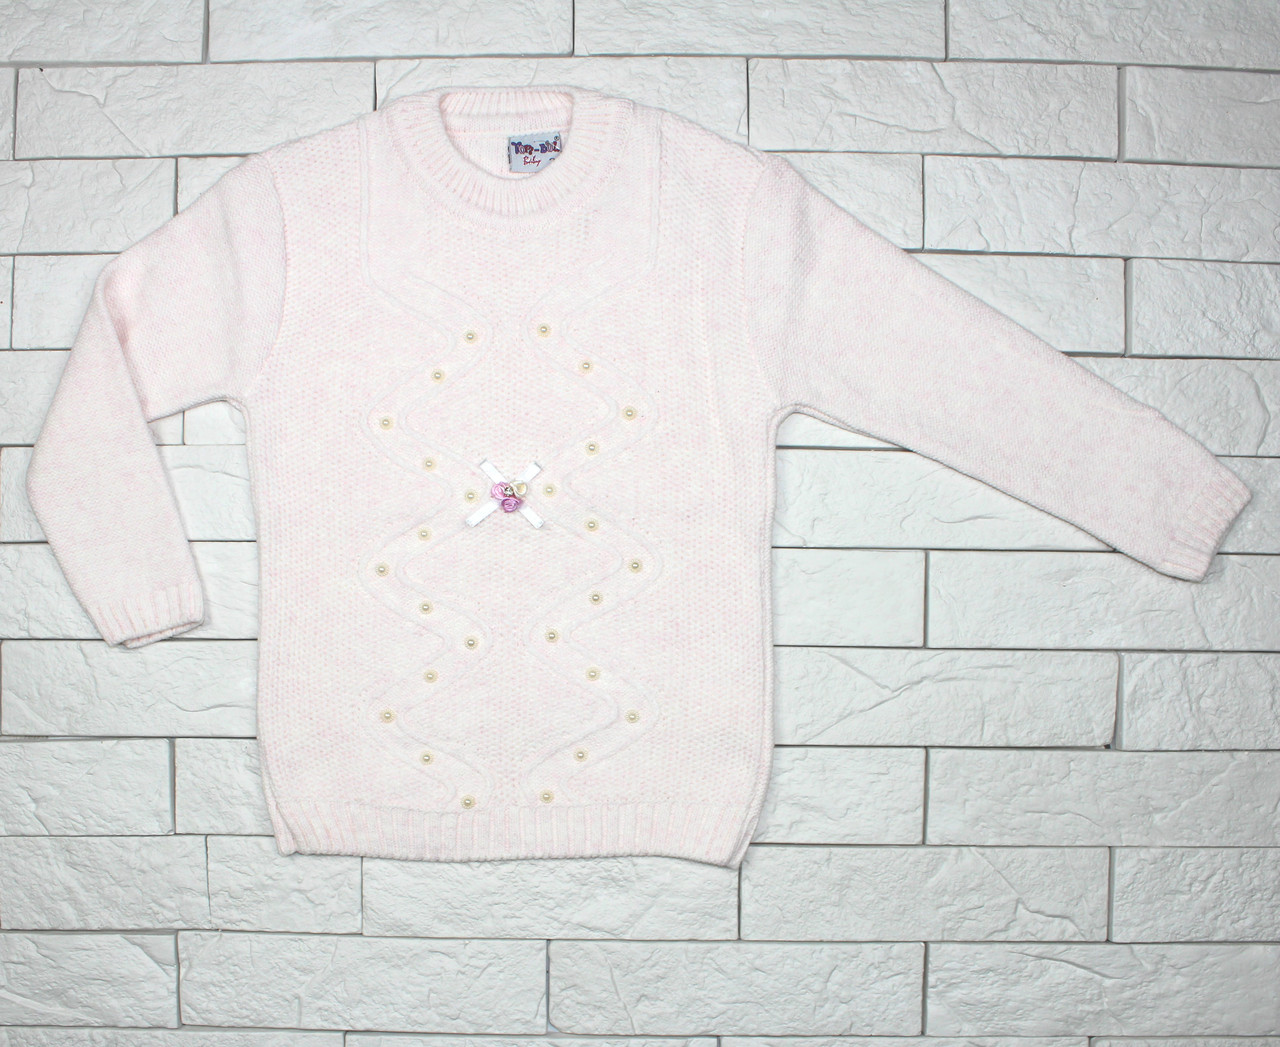 Теплый вязаный свитер нежно-розового цвета для девочки